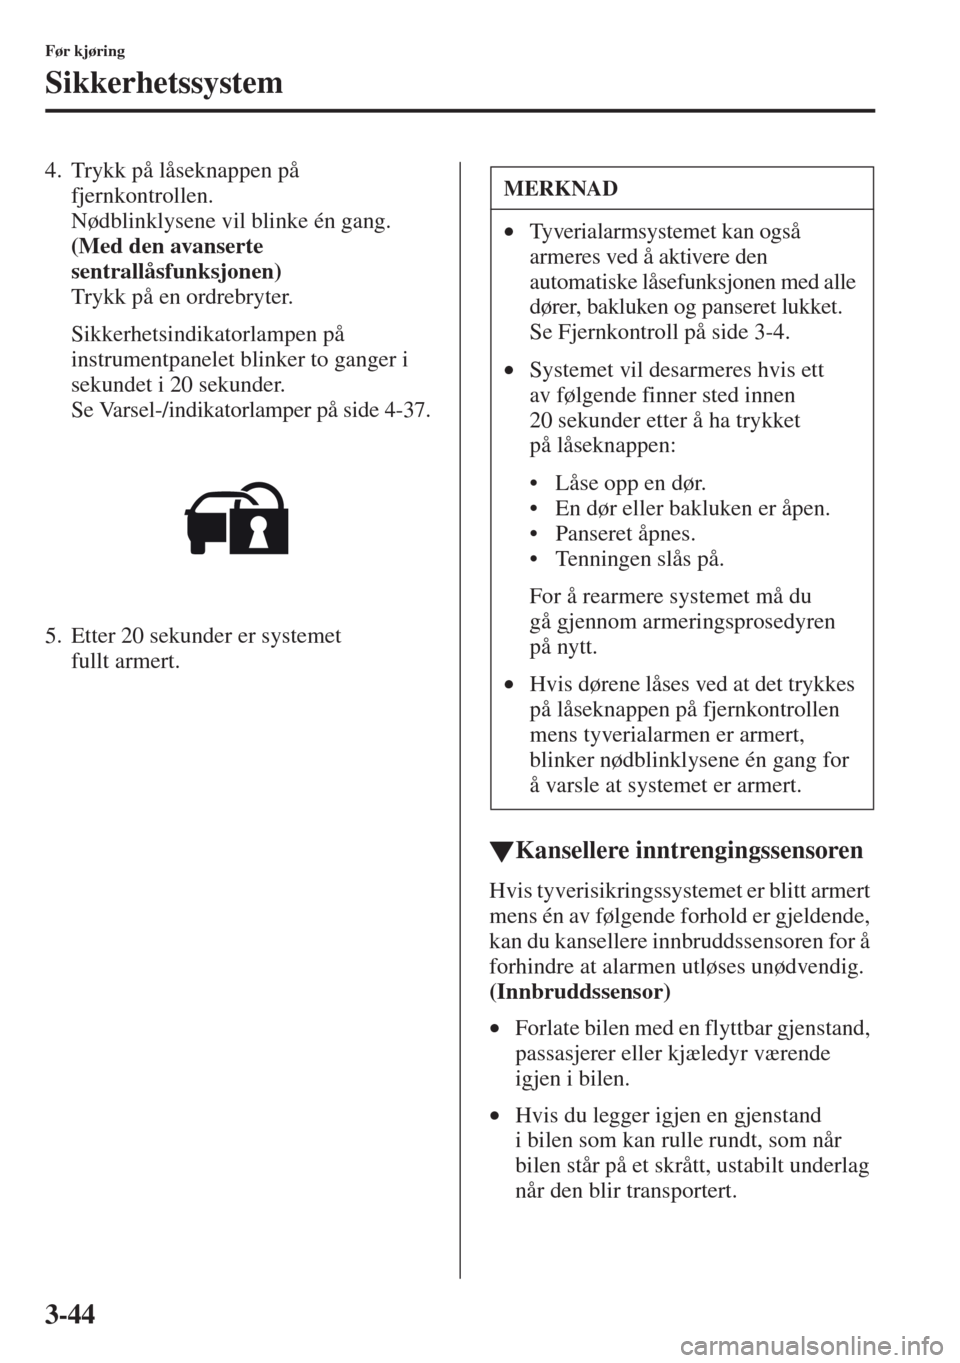 MAZDA MODEL CX-5 2013  Brukerhåndbok (in Norwegian) 3-44
Før kjøring
Sikkerhetssystem
4. Trykk på låseknappen på 
fjernkontrollen. 
Nødblinklysene vil blinke én gang.
(Med den avanserte 
sentrallåsfunksjonen)
Trykk på en ordrebryter.
Sikkerhet